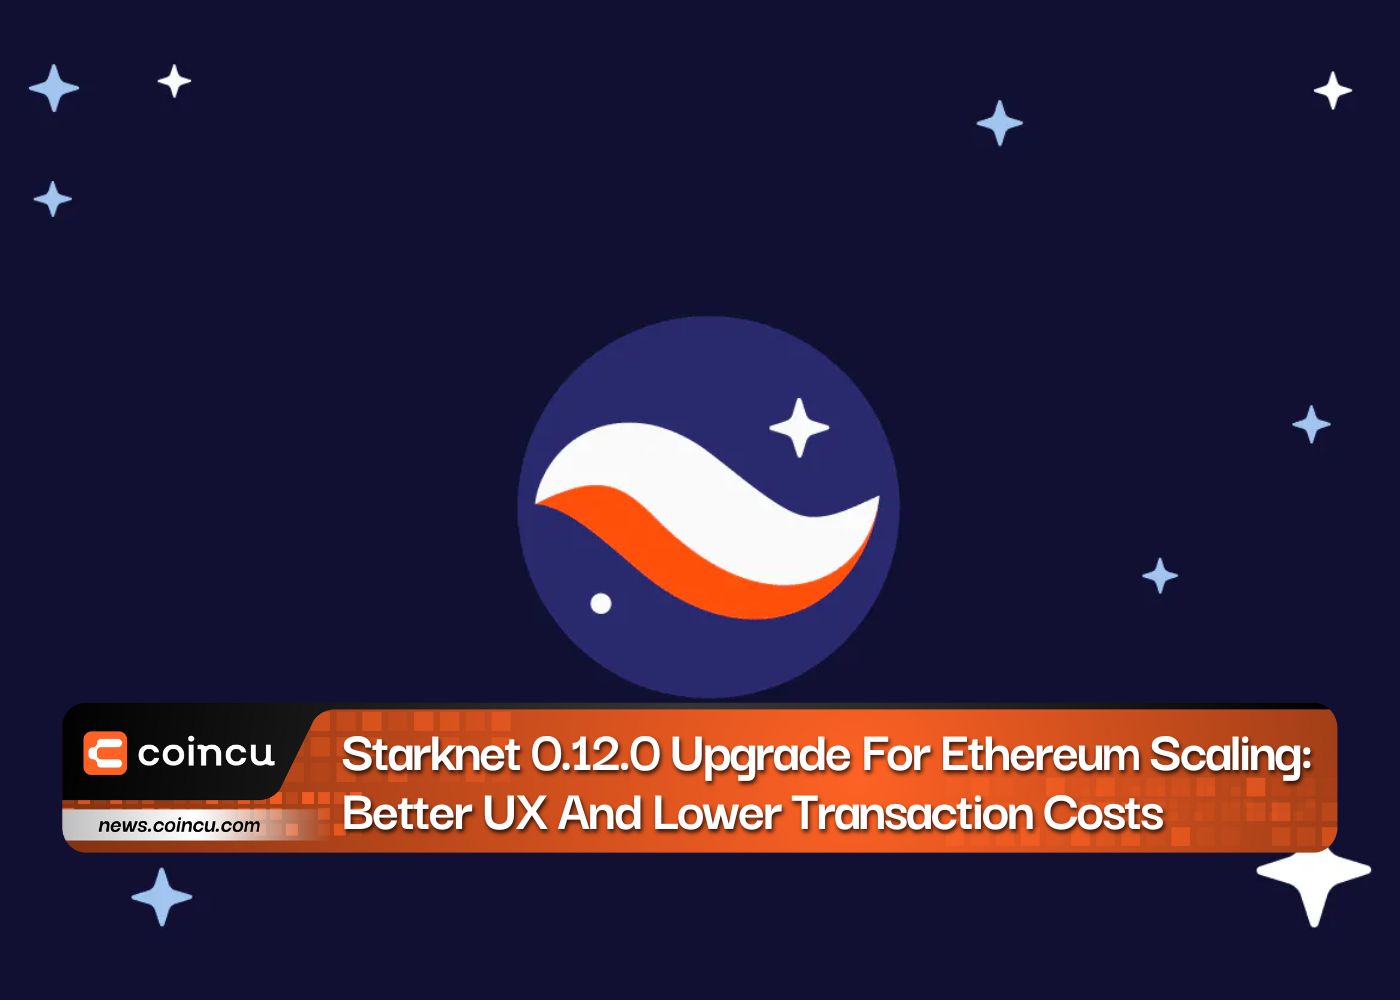 Actualización de Starknet 0.12.0 para escalamiento de Ethereum: mejor UX y menores costos de transacción